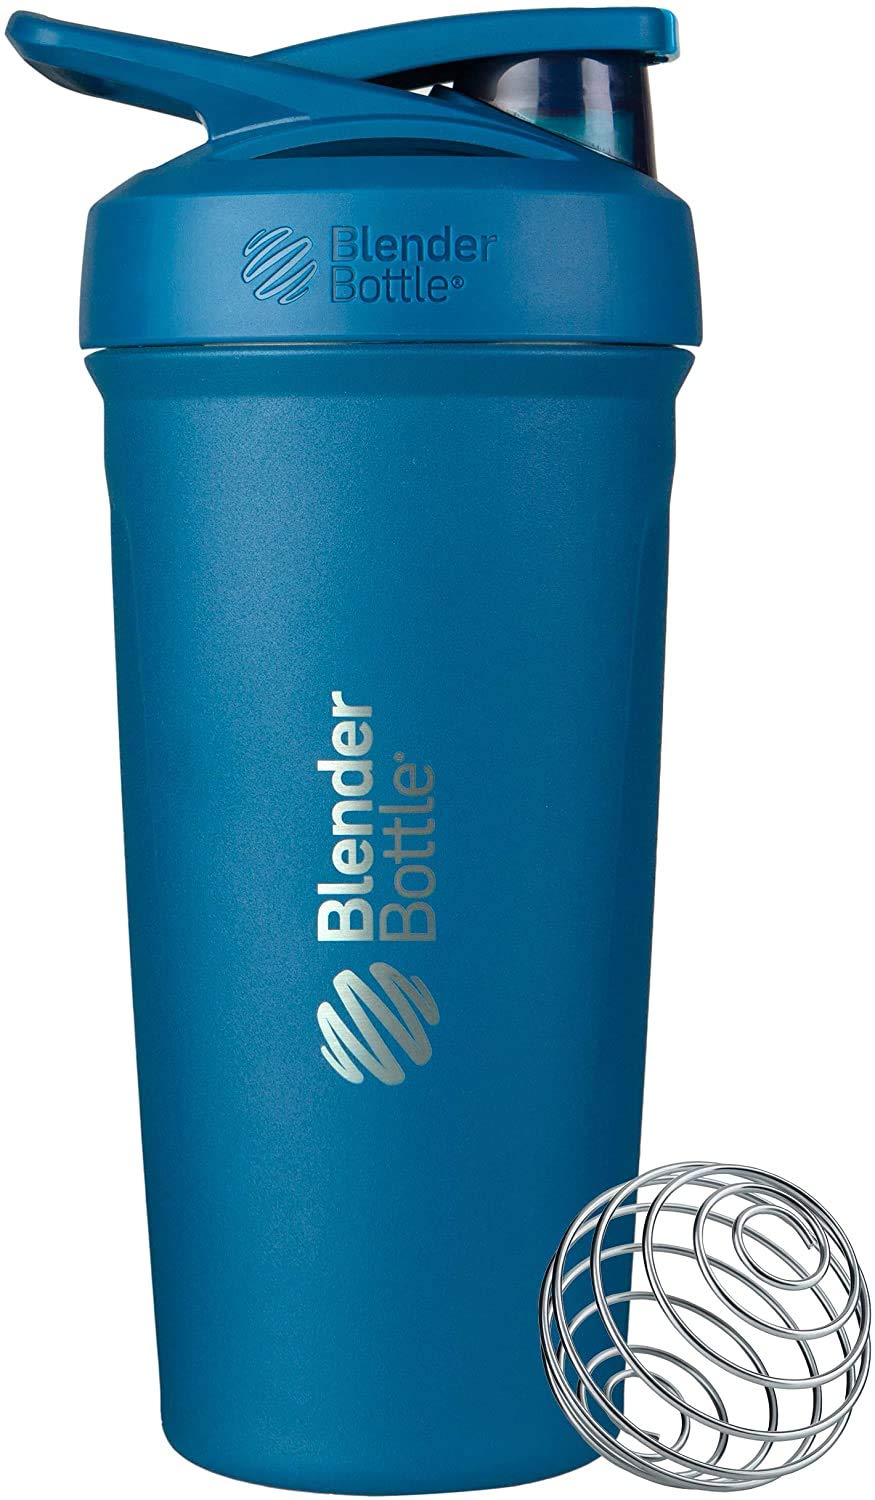 BlenderBottle Strada - Edelstahl Trinkflasche, Thermoflasche mit BlenderBall, Protein Shaker und Fitness Shaker, BPA frei, Doppelwandig, Vakuum isoliert - ocean blau, 375 g